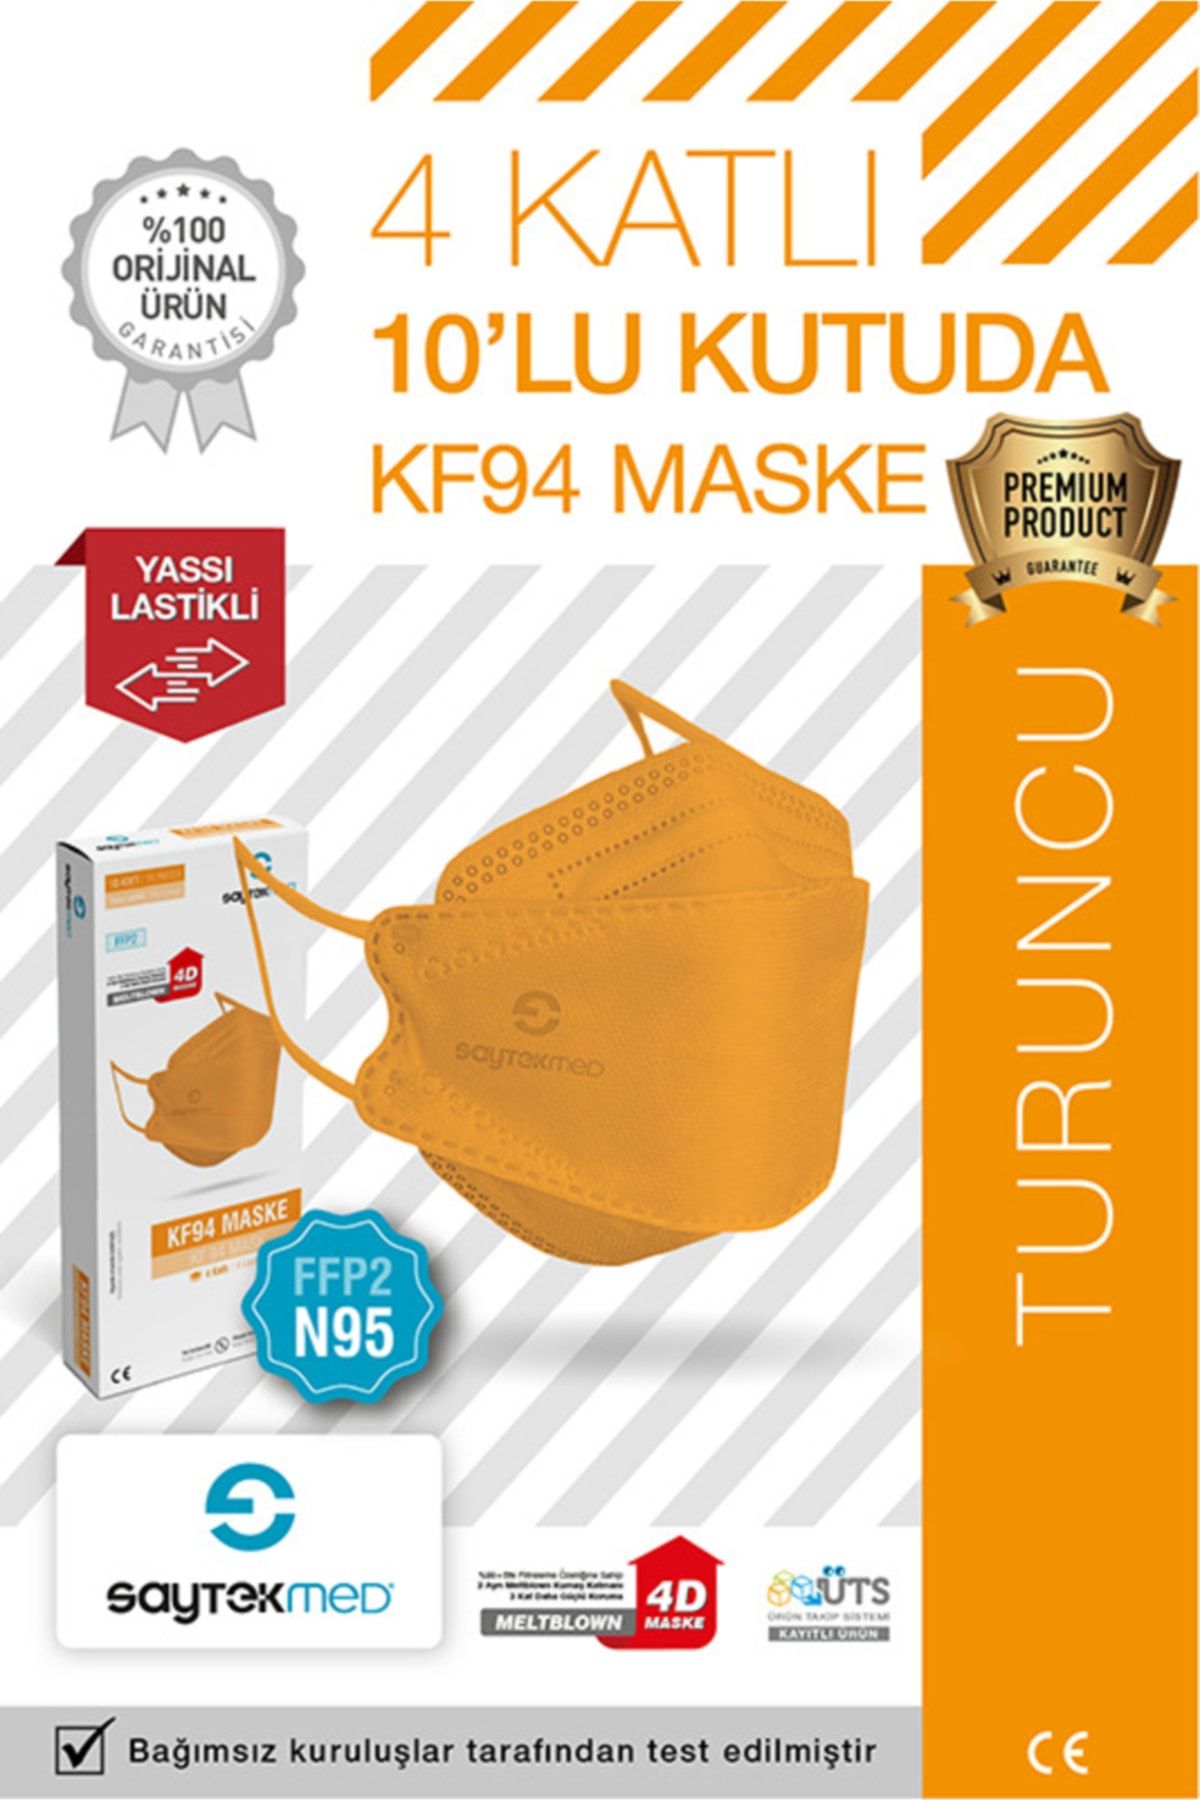 Erkentmed Cpr Maske Suni Solunum Maskesi Turuncu Fiyatları, Özellikleri ve  Yorumları